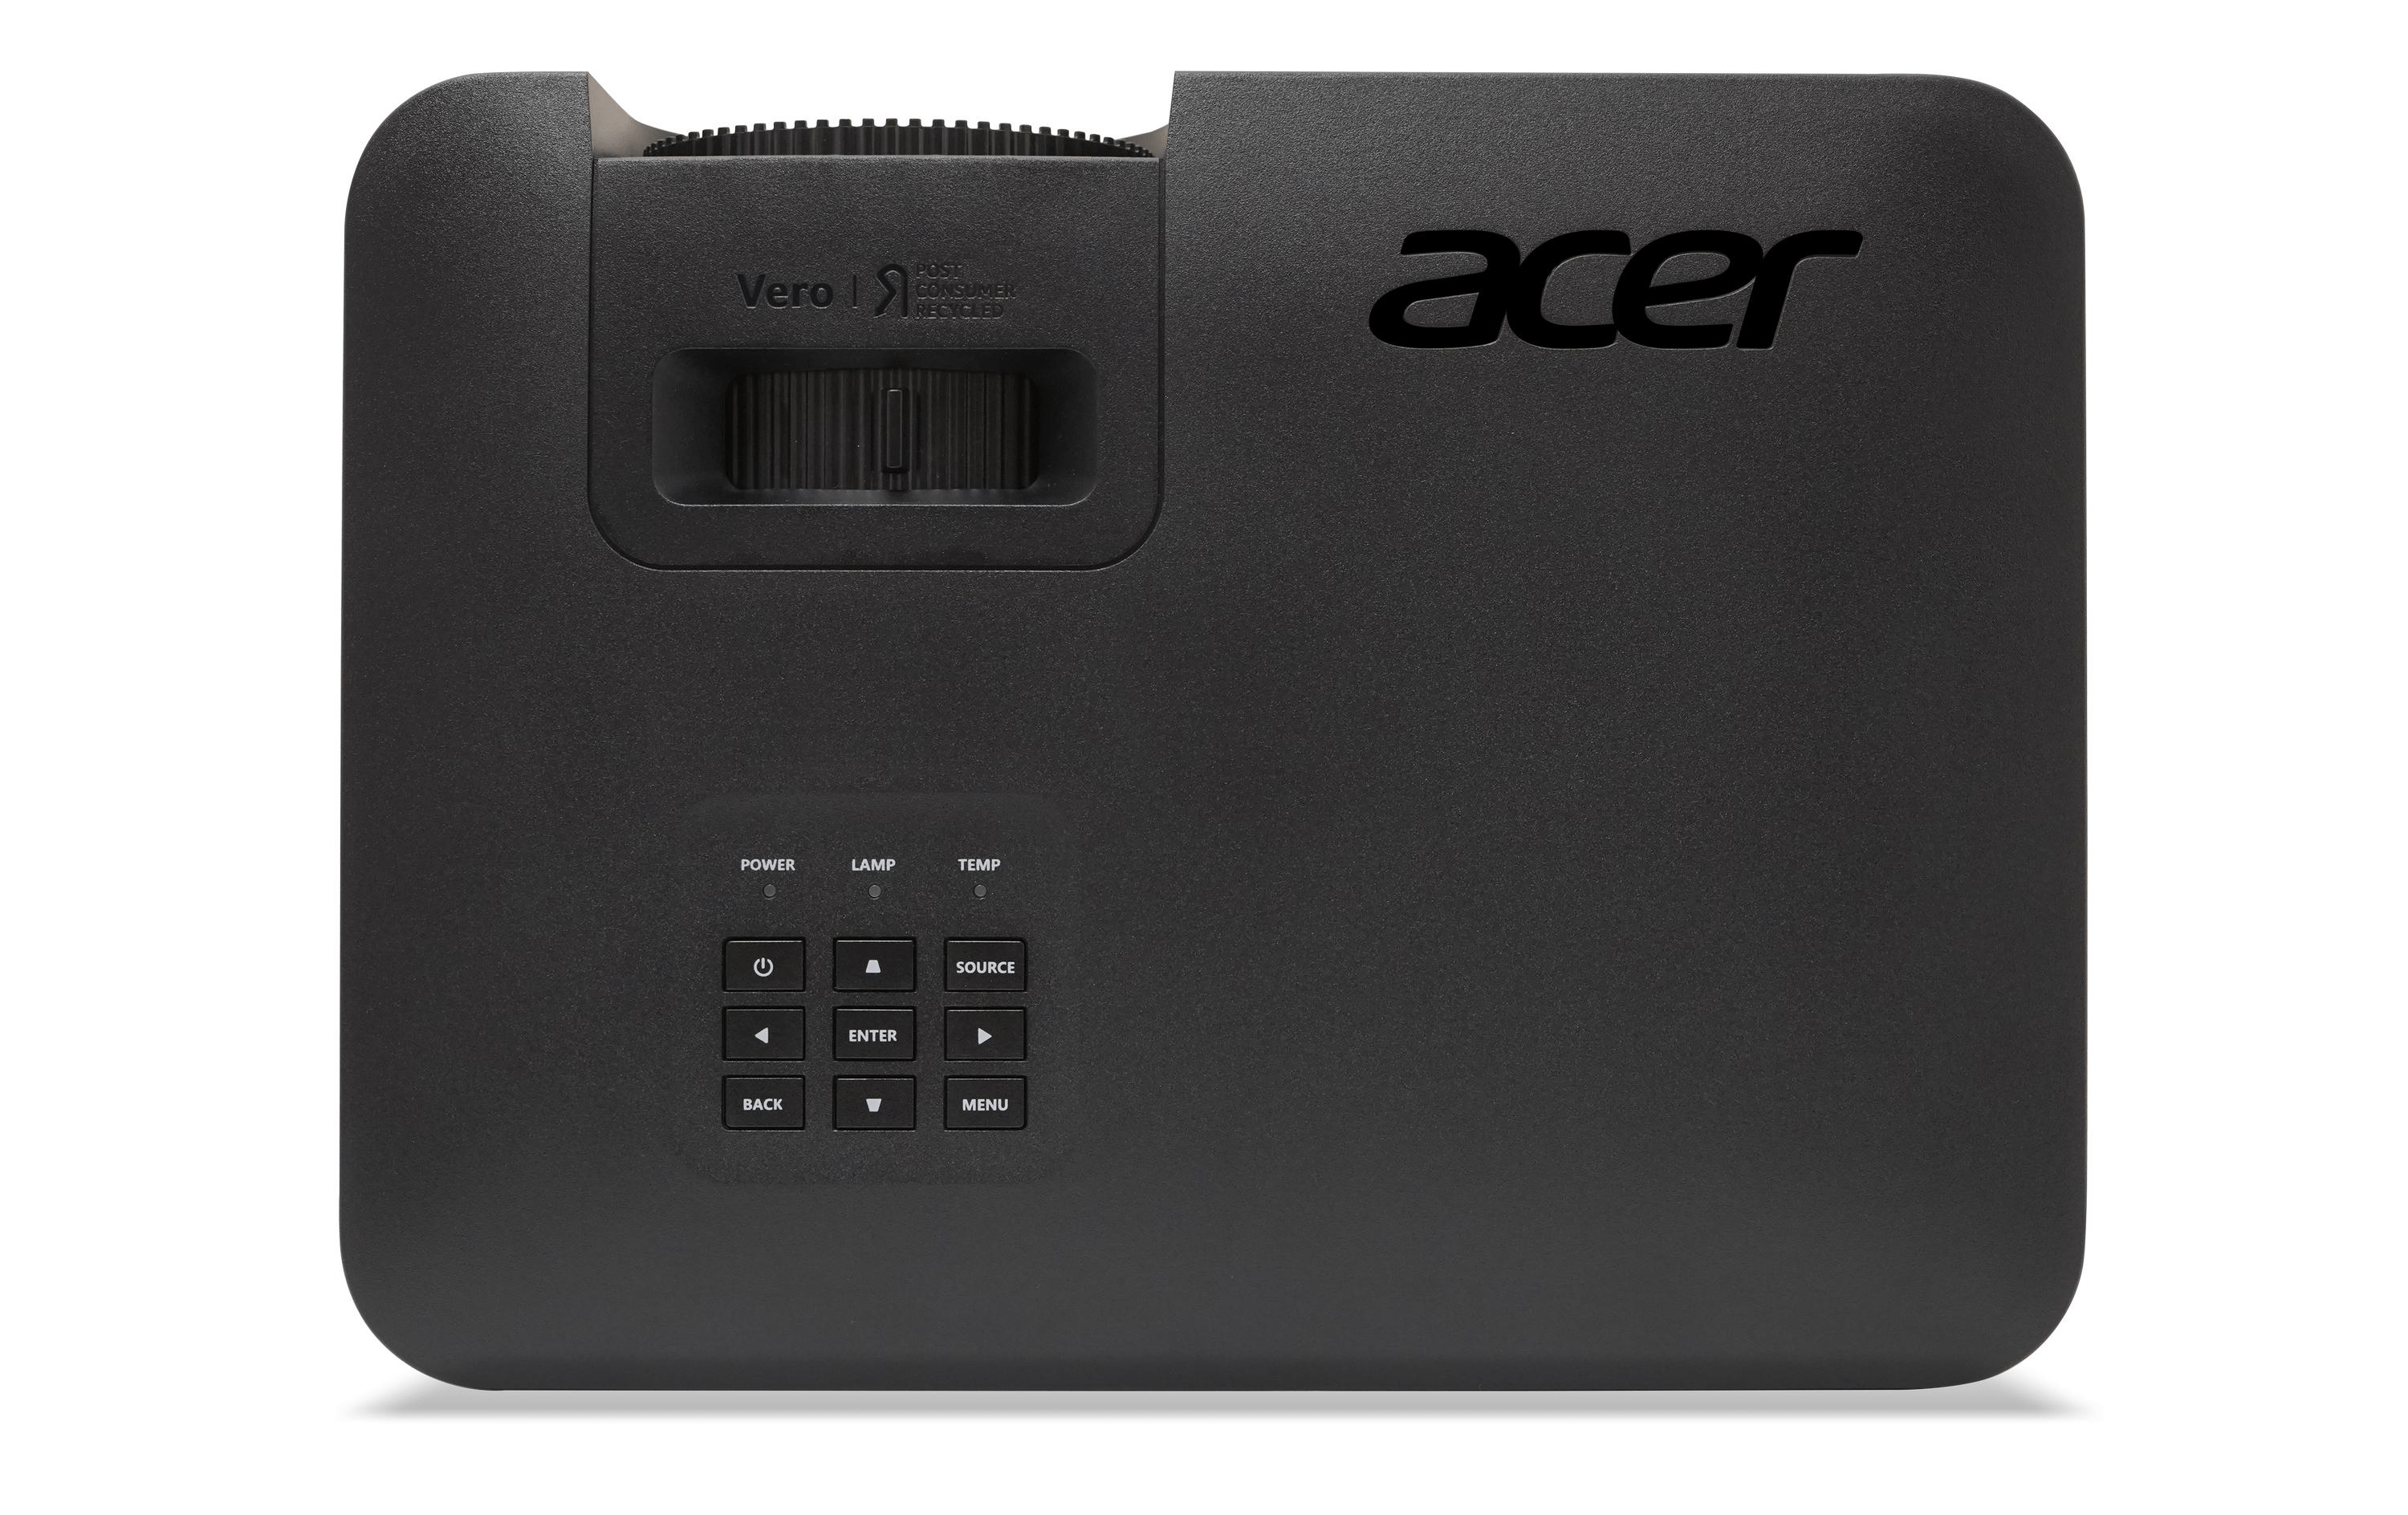 Acer DLP Projektor PL2520i (Laser-Beamer)